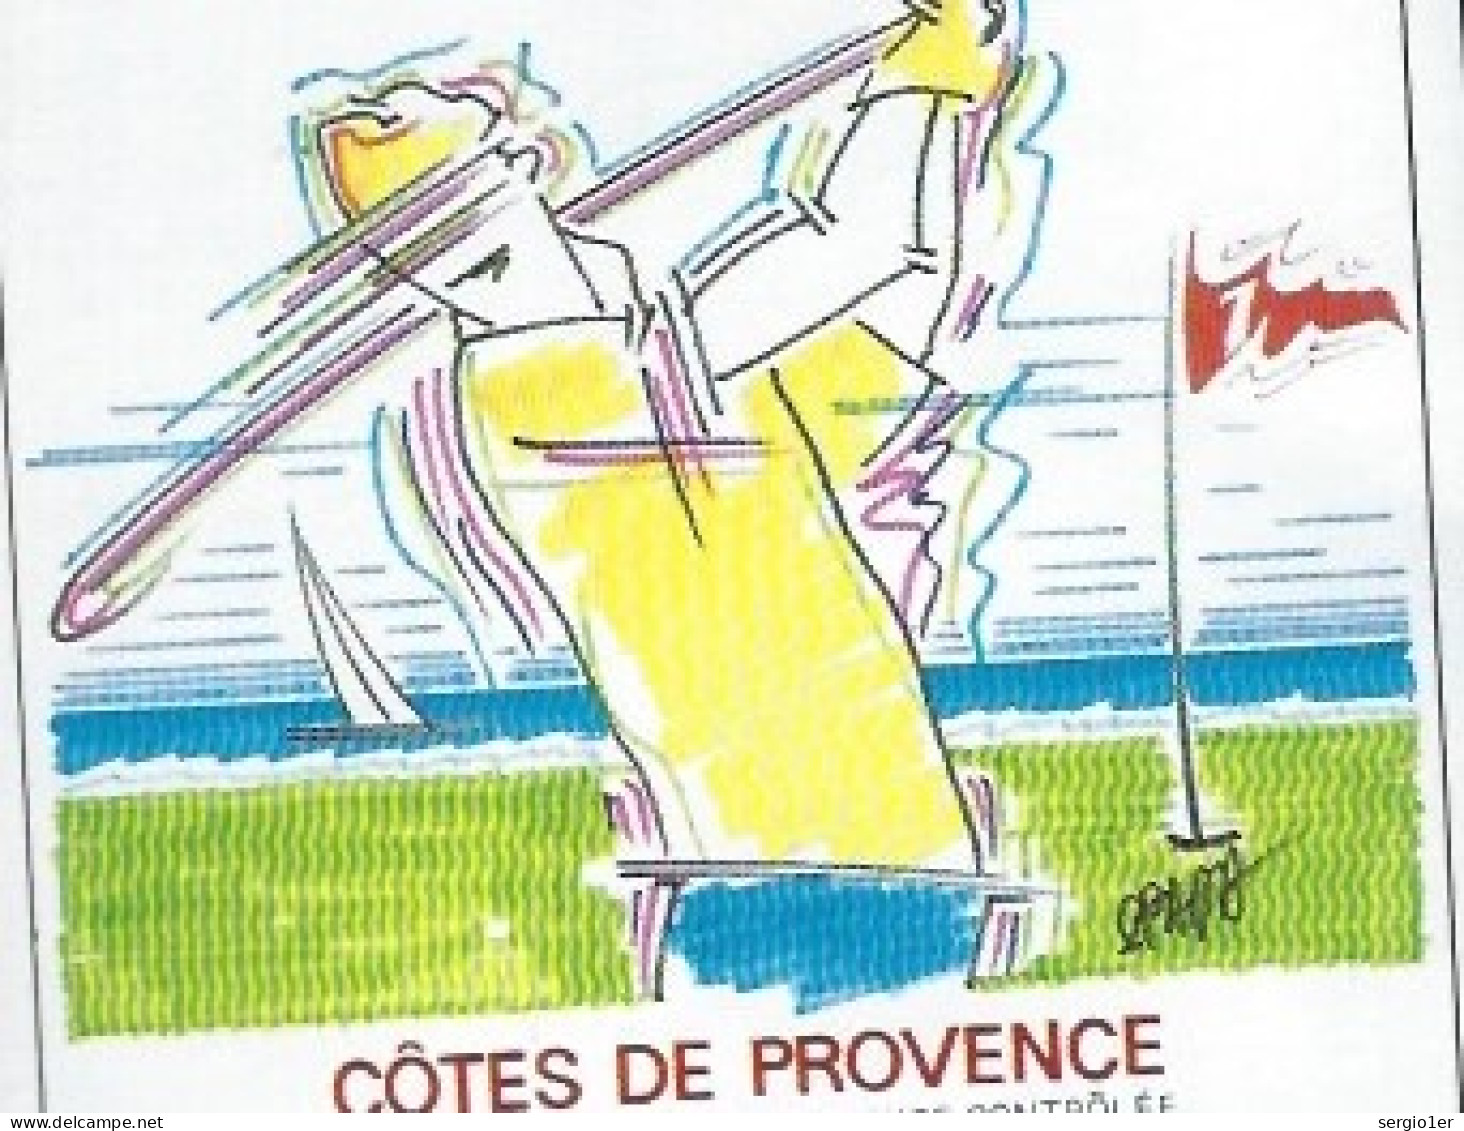 Etiquette Vin  Côtes De Provence  La Cuvée Du Golfeur Domaine Des Myrtes  Barnarous La Londe Des Maures - Pink Wines